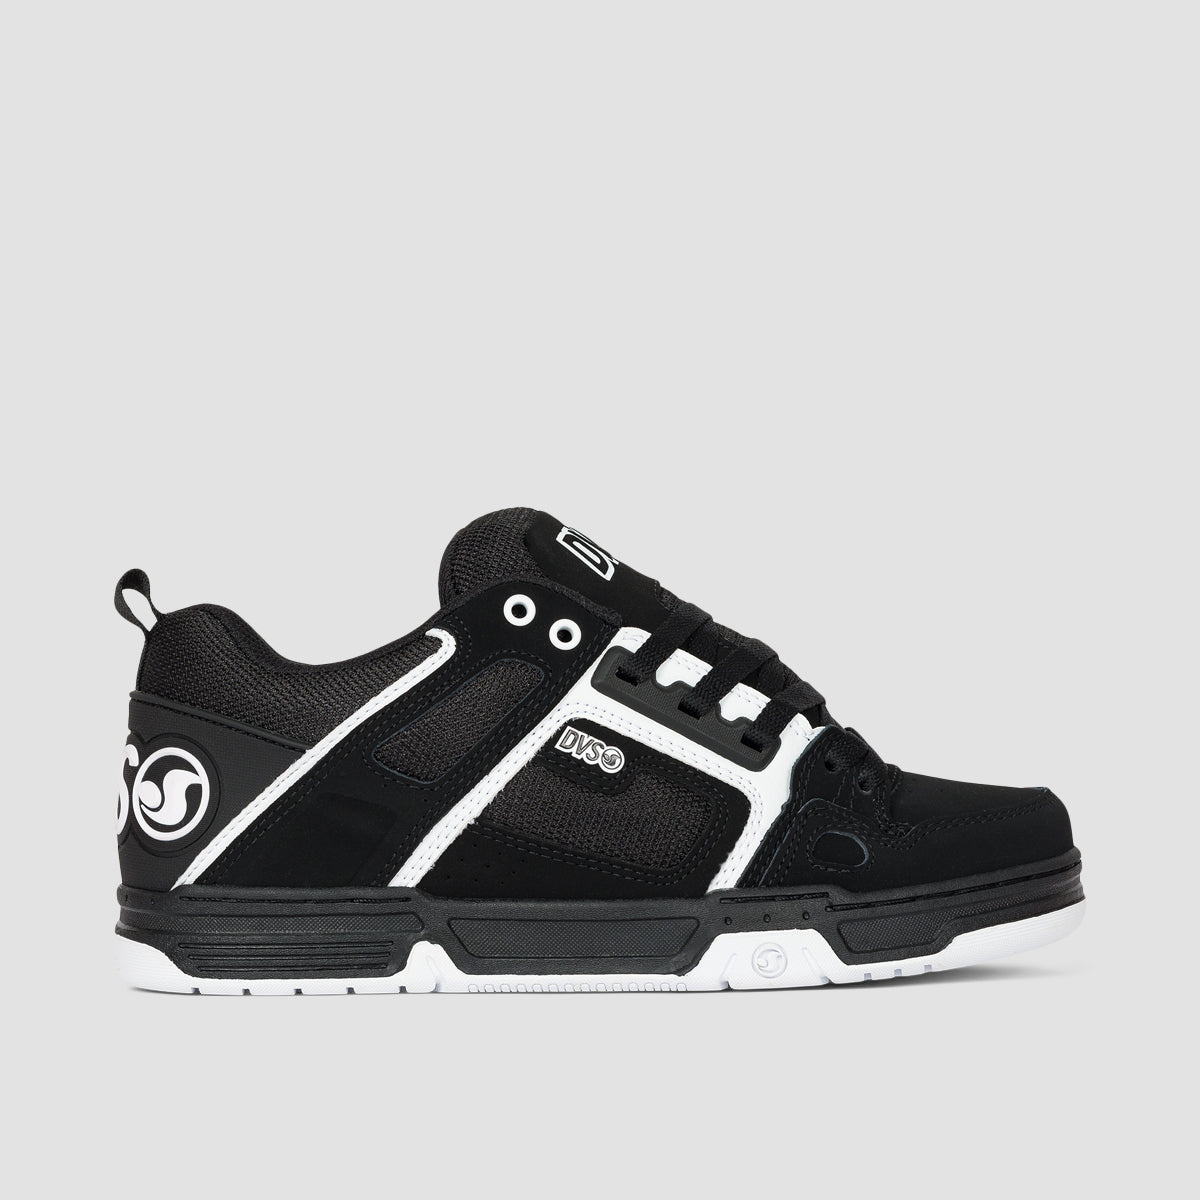 DVS Comanche Shoes - Black/White Leather